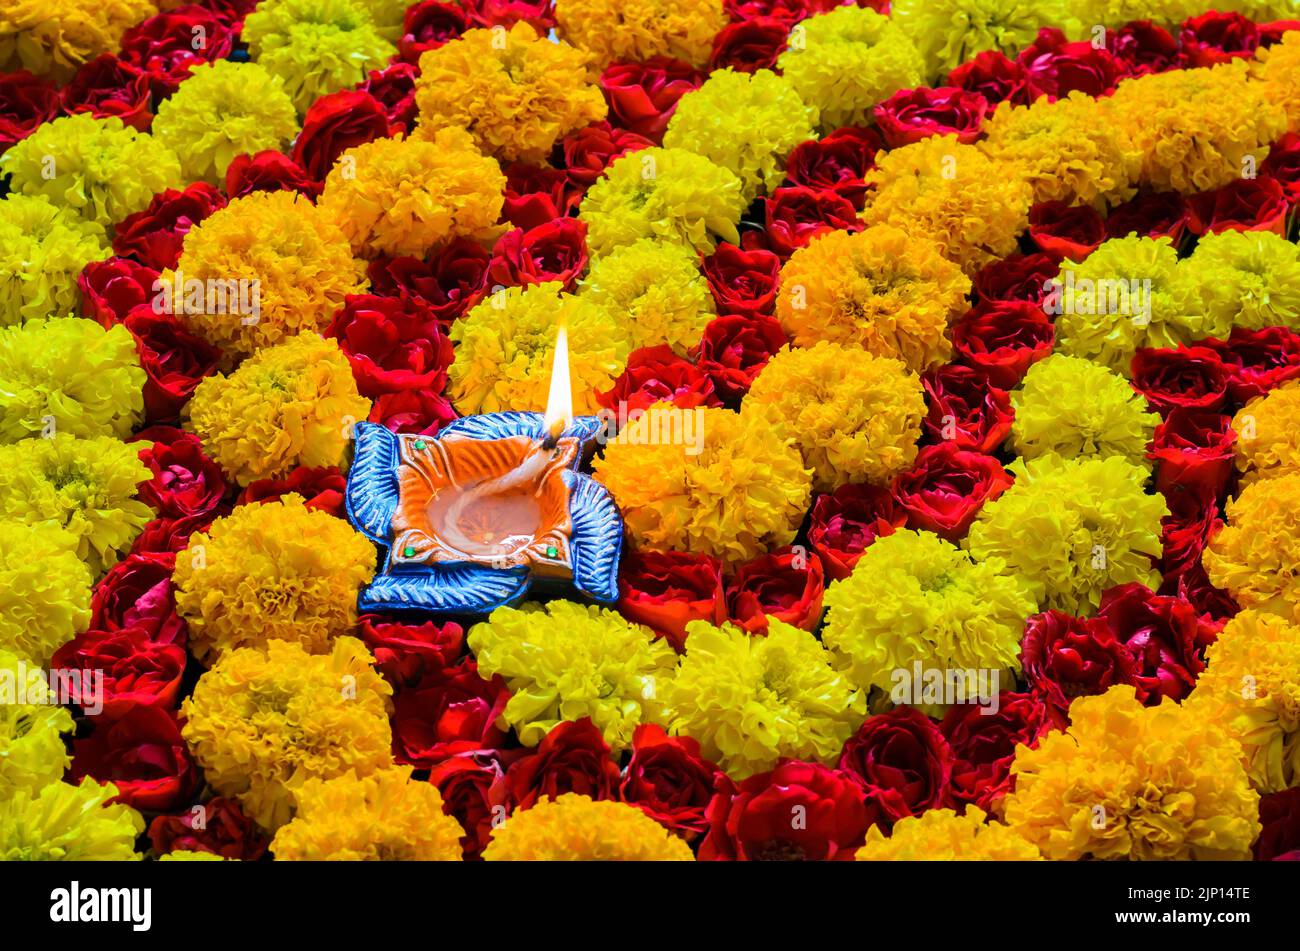 Rangoli decorativi di fiori di rosa e marigold per la festa di Diwali con lampada di diya in argilla accesa con fiamma. Foto Stock